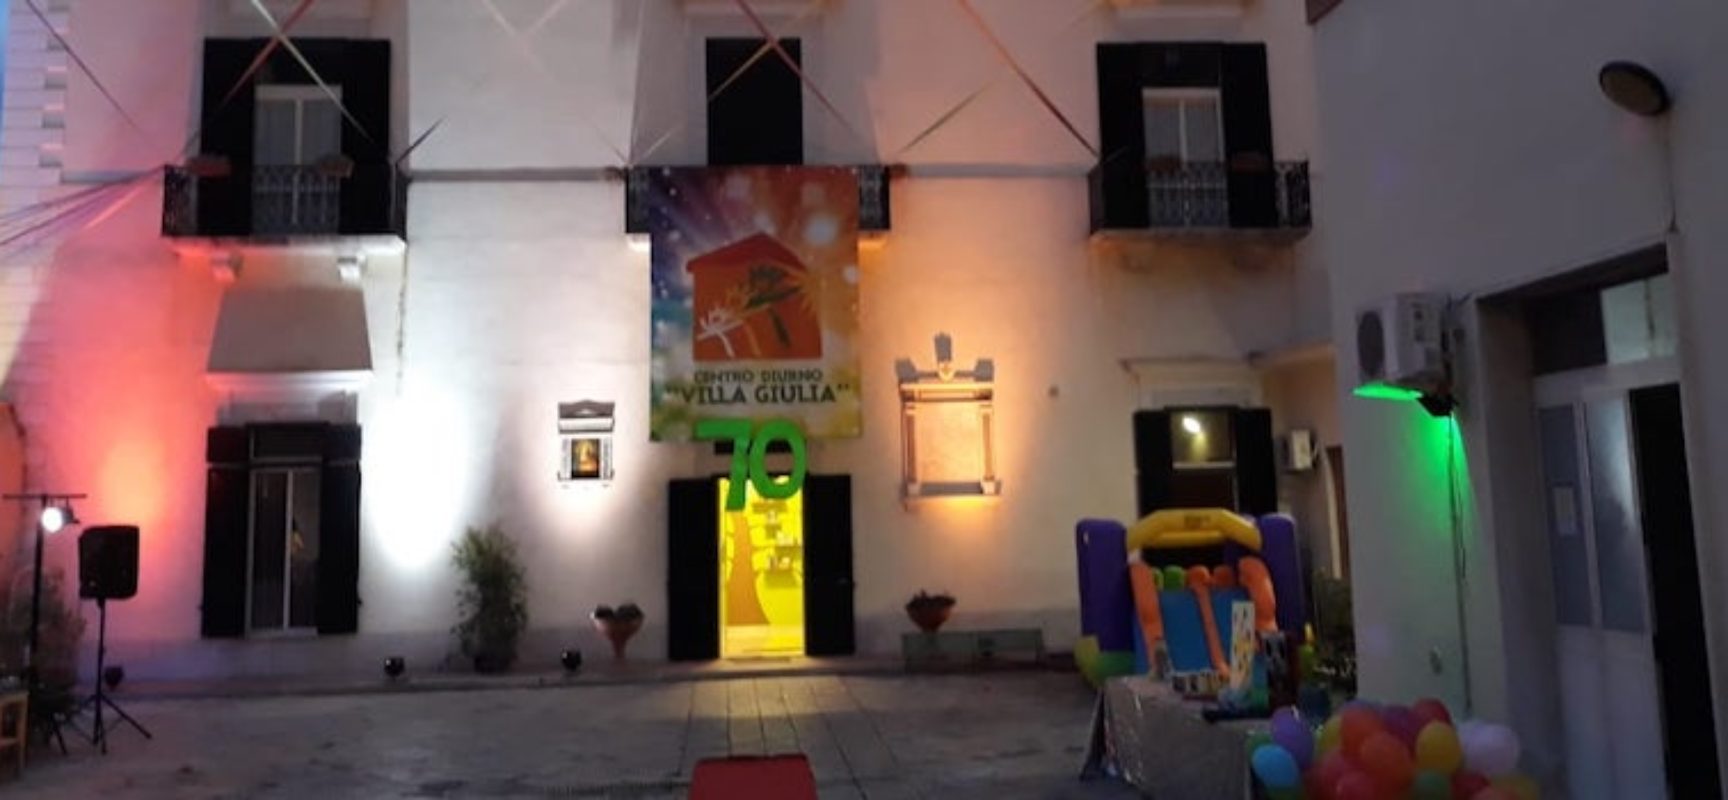 Villa Giulia, appello alla Regione: “Bambini costretti a casa per mancanza di fondi”